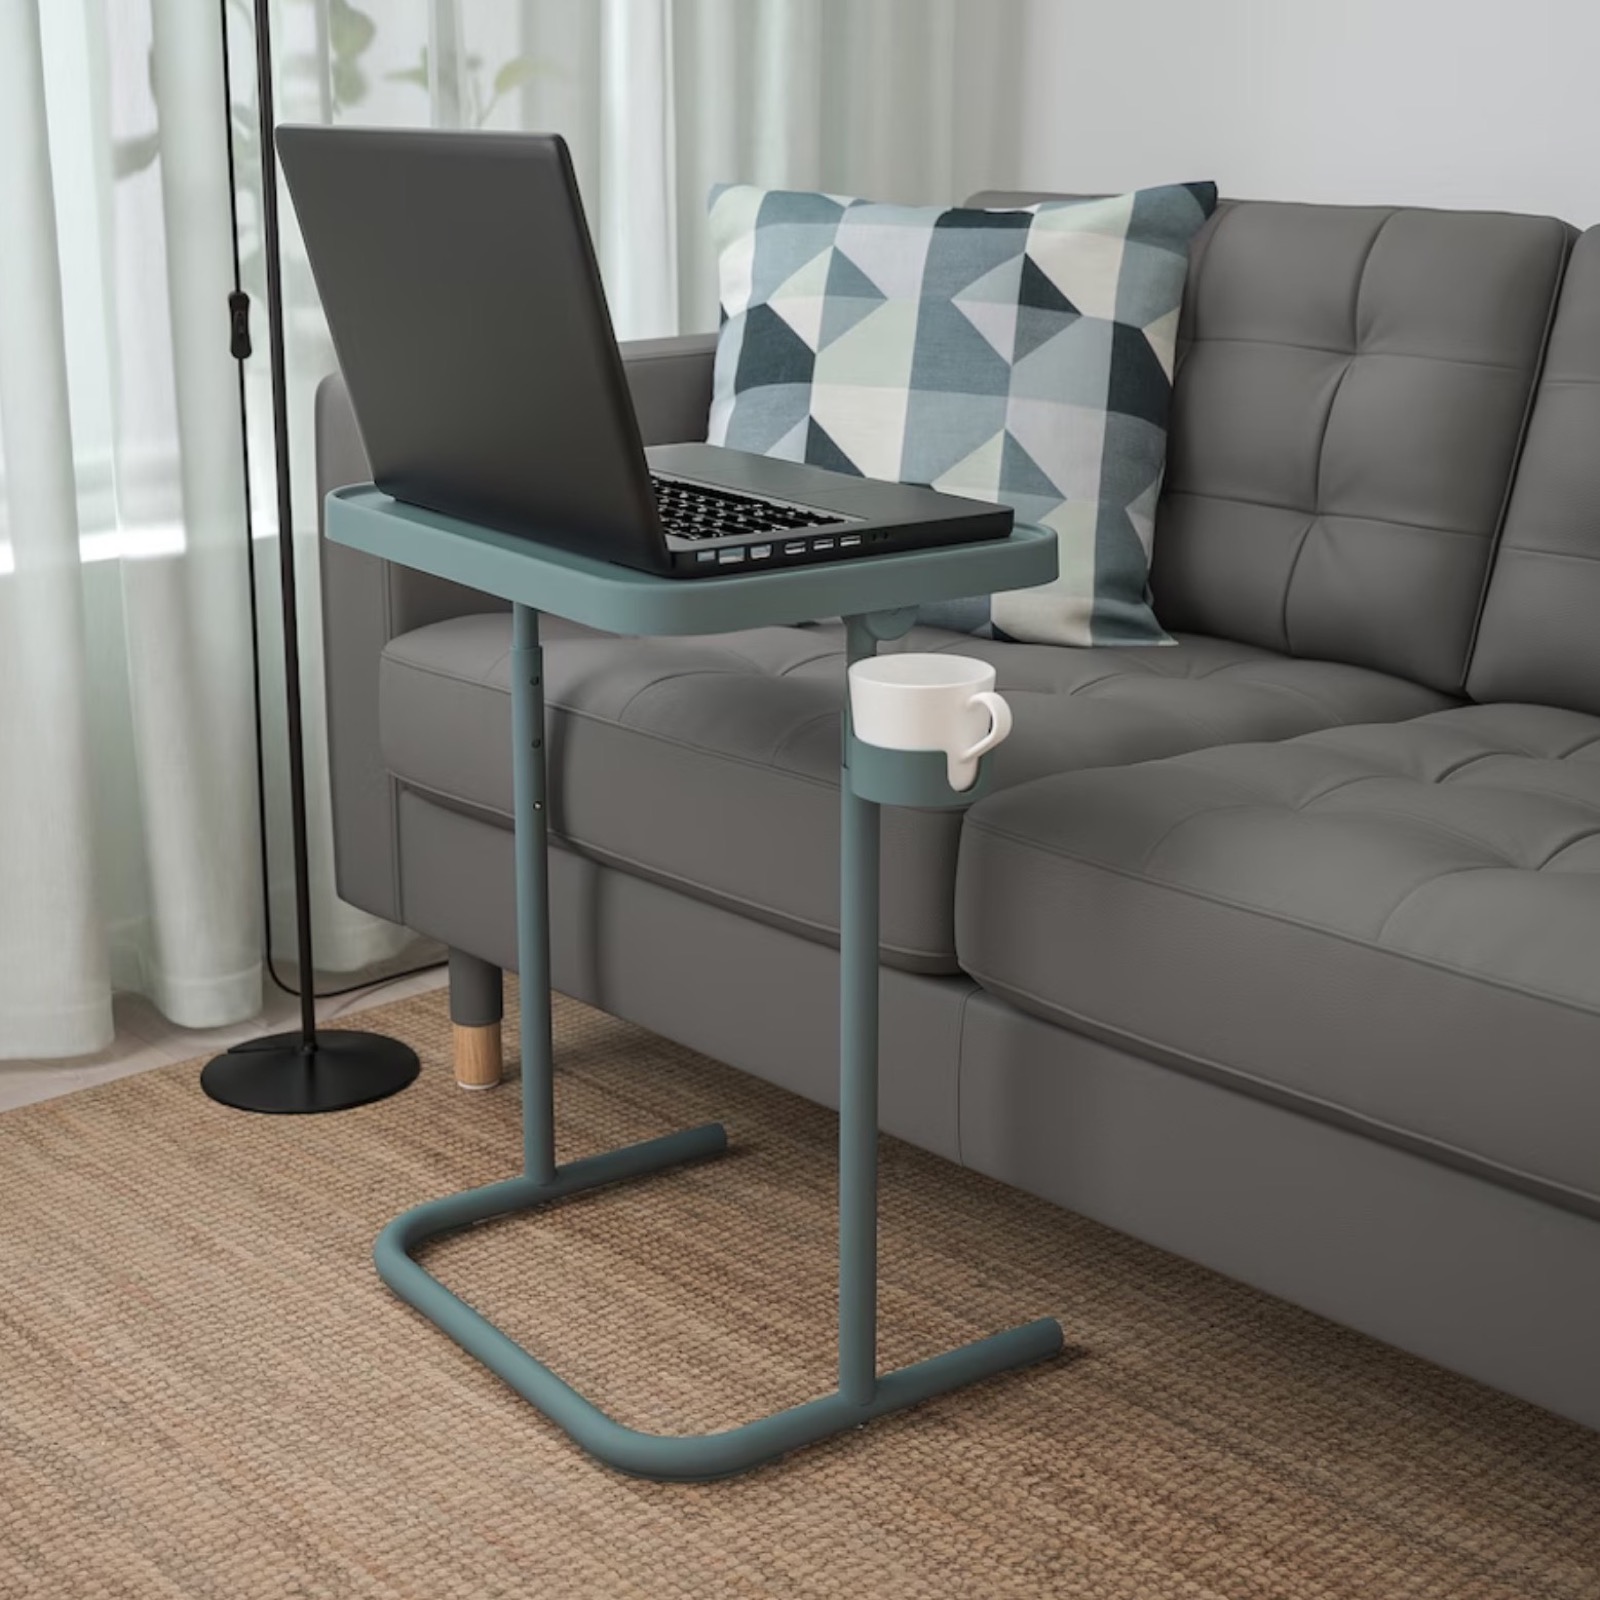 BJÖRKÅSEN, il tavolo IKEA per lavorare al PC da ogni angolo di casa